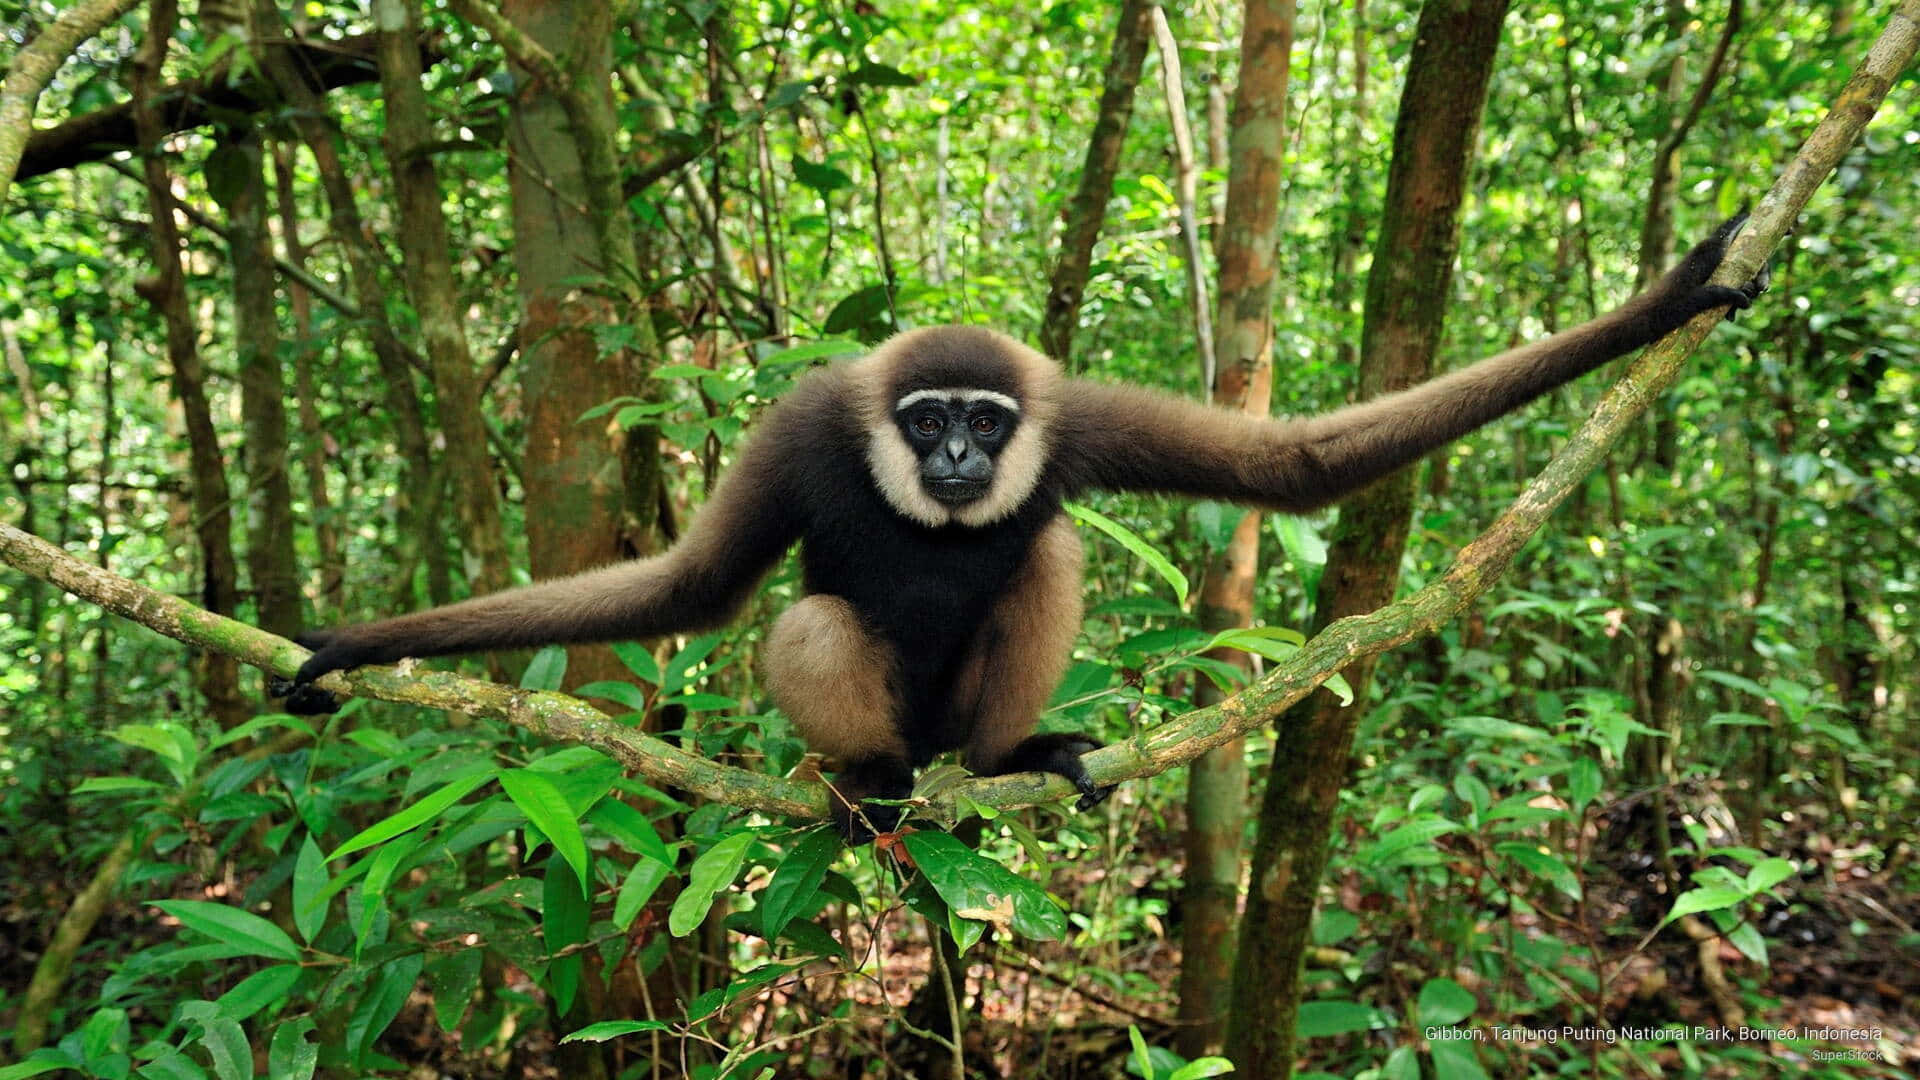 Gibbonemaschio Atletico Appeso A Un Ramo Di Albero In Un Ambiente Naturale Di Foresta